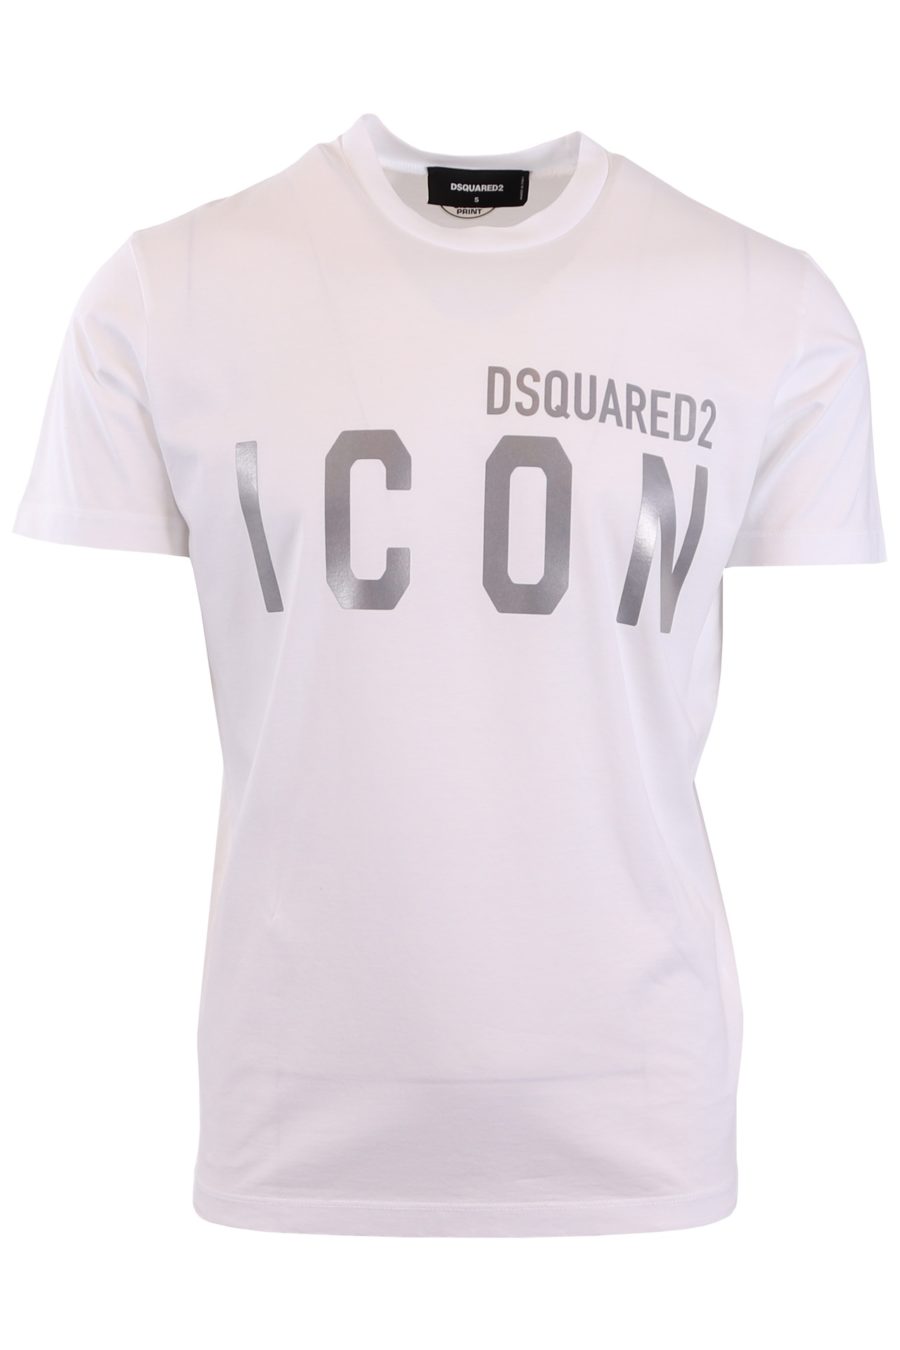 Dsquared2 T-shirt blanc avec "Icon" réfléchissant - 627809236b8305bd8d74f3f0baf20e860ff4bedf